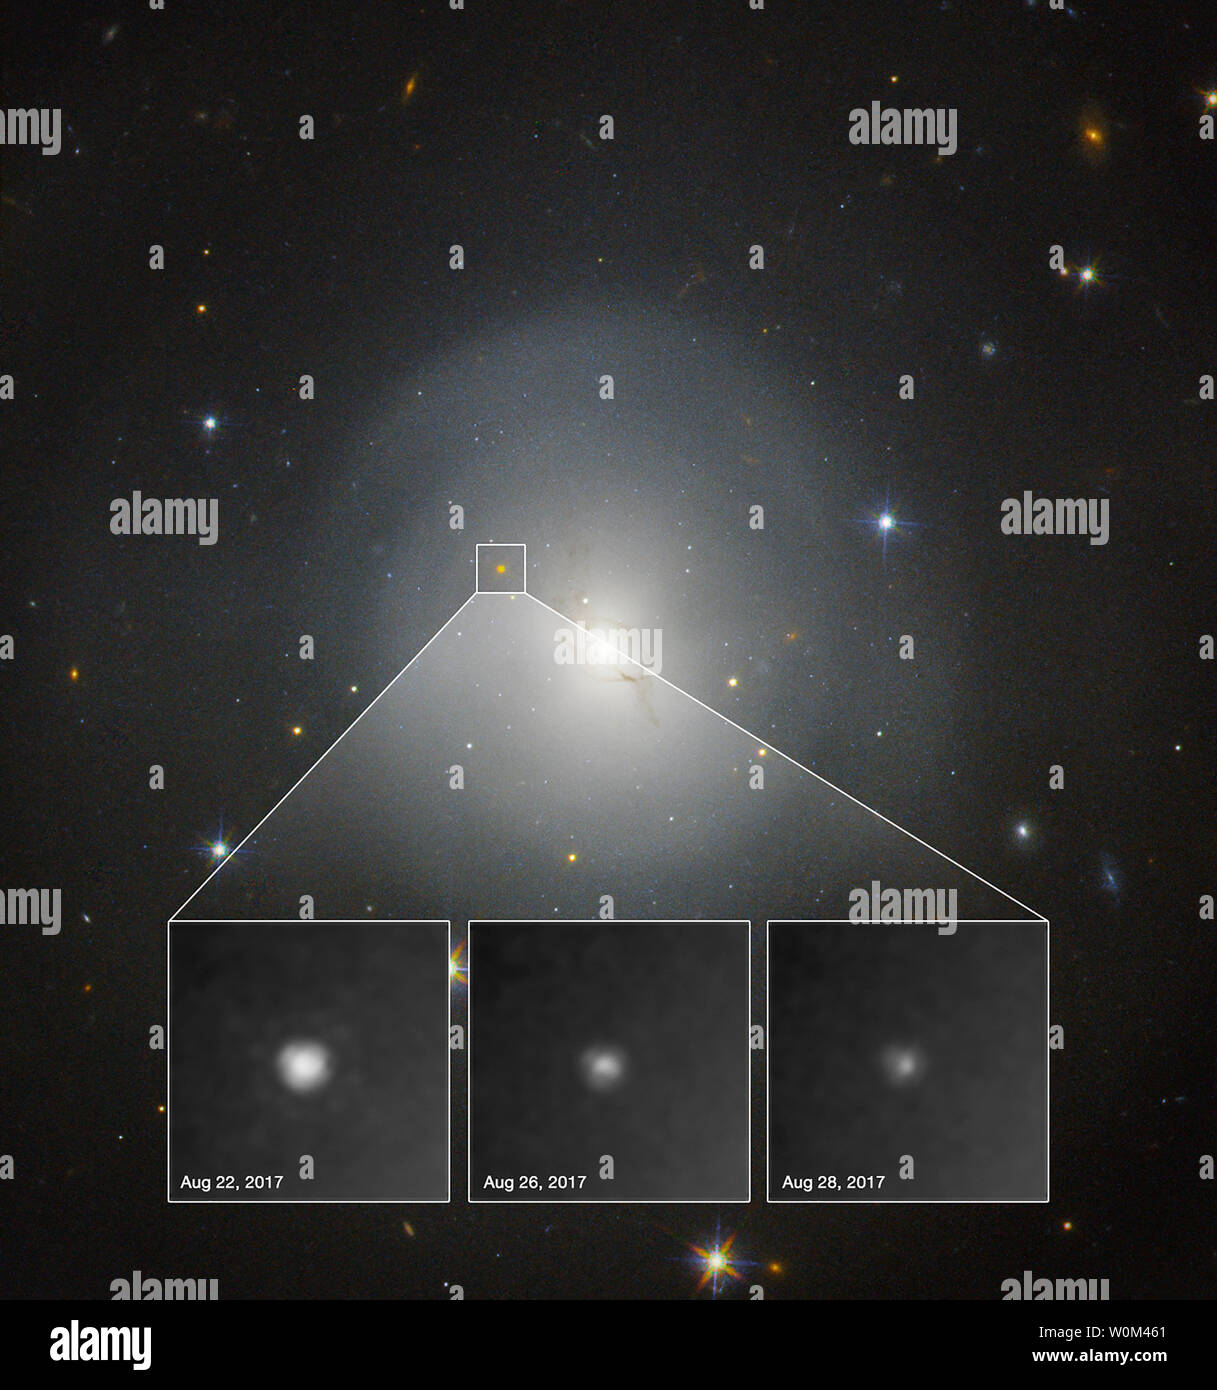 Il 17 agosto 2017, l'interferometro laser Gravitational-Wave Osservatorio (LIGO) e l interferometro Virgo sia rilevato onde gravitazionali dalla collisione tra due stelle di neutroni. Entro dodici ore di osservatori avevano individuato la fonte dell'evento all'interno della galassia lenticolare NGC 4993, mostrati in questa immagine si sono riuniti con la NASA/ESA Telescopio Spaziale Hubble. La associata svasatura stellare, un kilonova, è chiaramente visibile nelle osservazioni di Hubble. Questa è la prima volta che la controparte ottica di un onda gravitazionale evento è stato osservato. Hubble ha osservato il kilonova fading gradualmente uovere Foto Stock